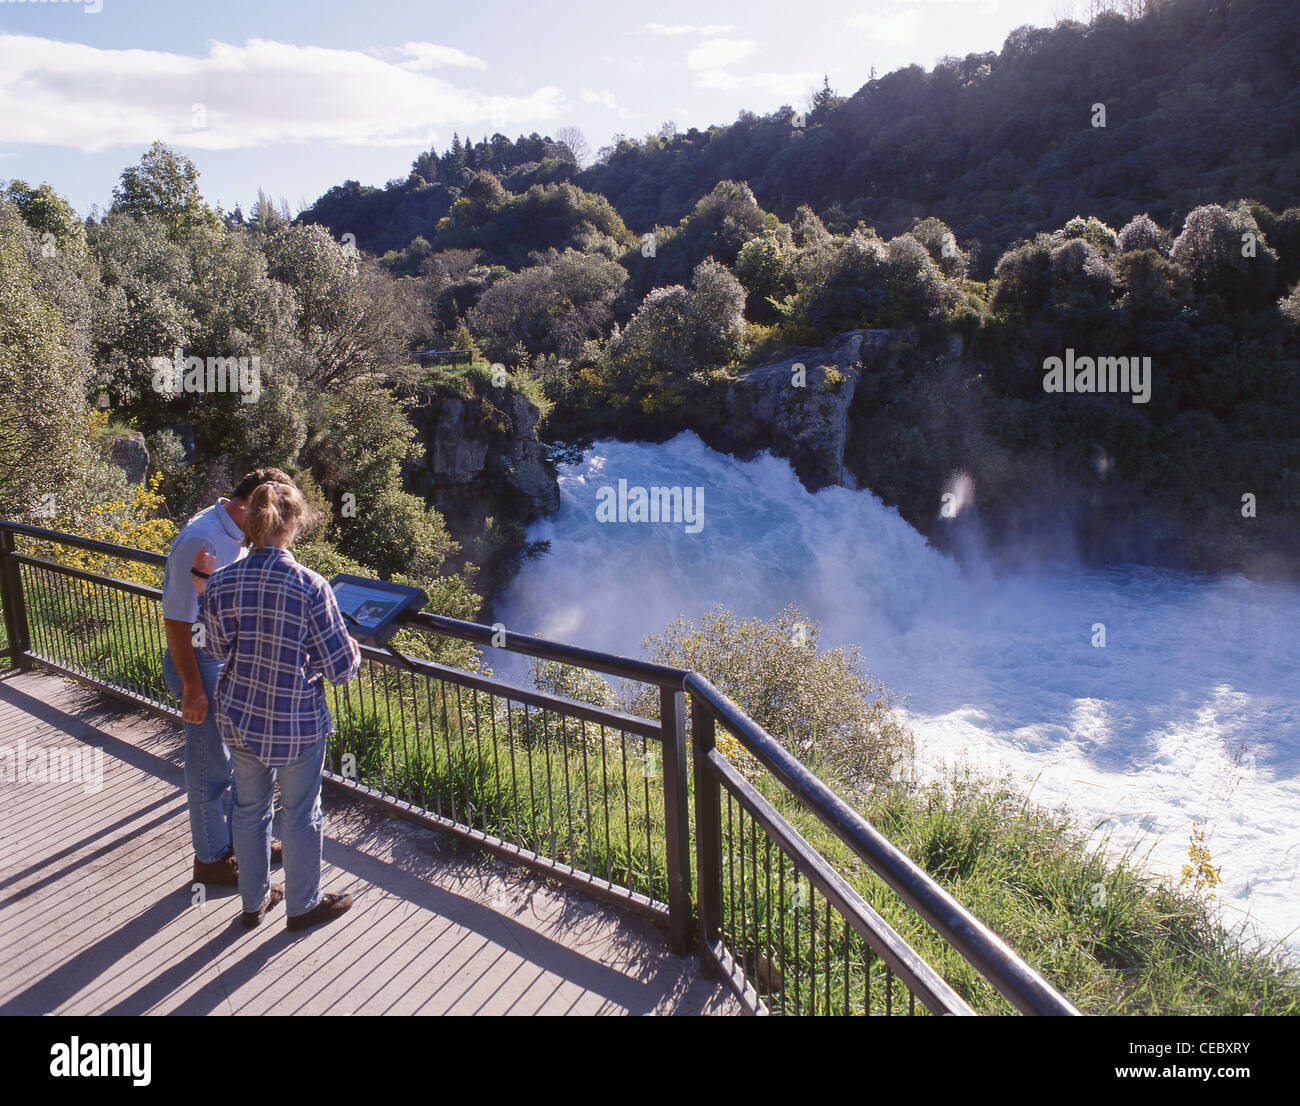 Huka Falls from observation point, near Taupo, Waikato Region, North Island, New Zealand Stock Photo